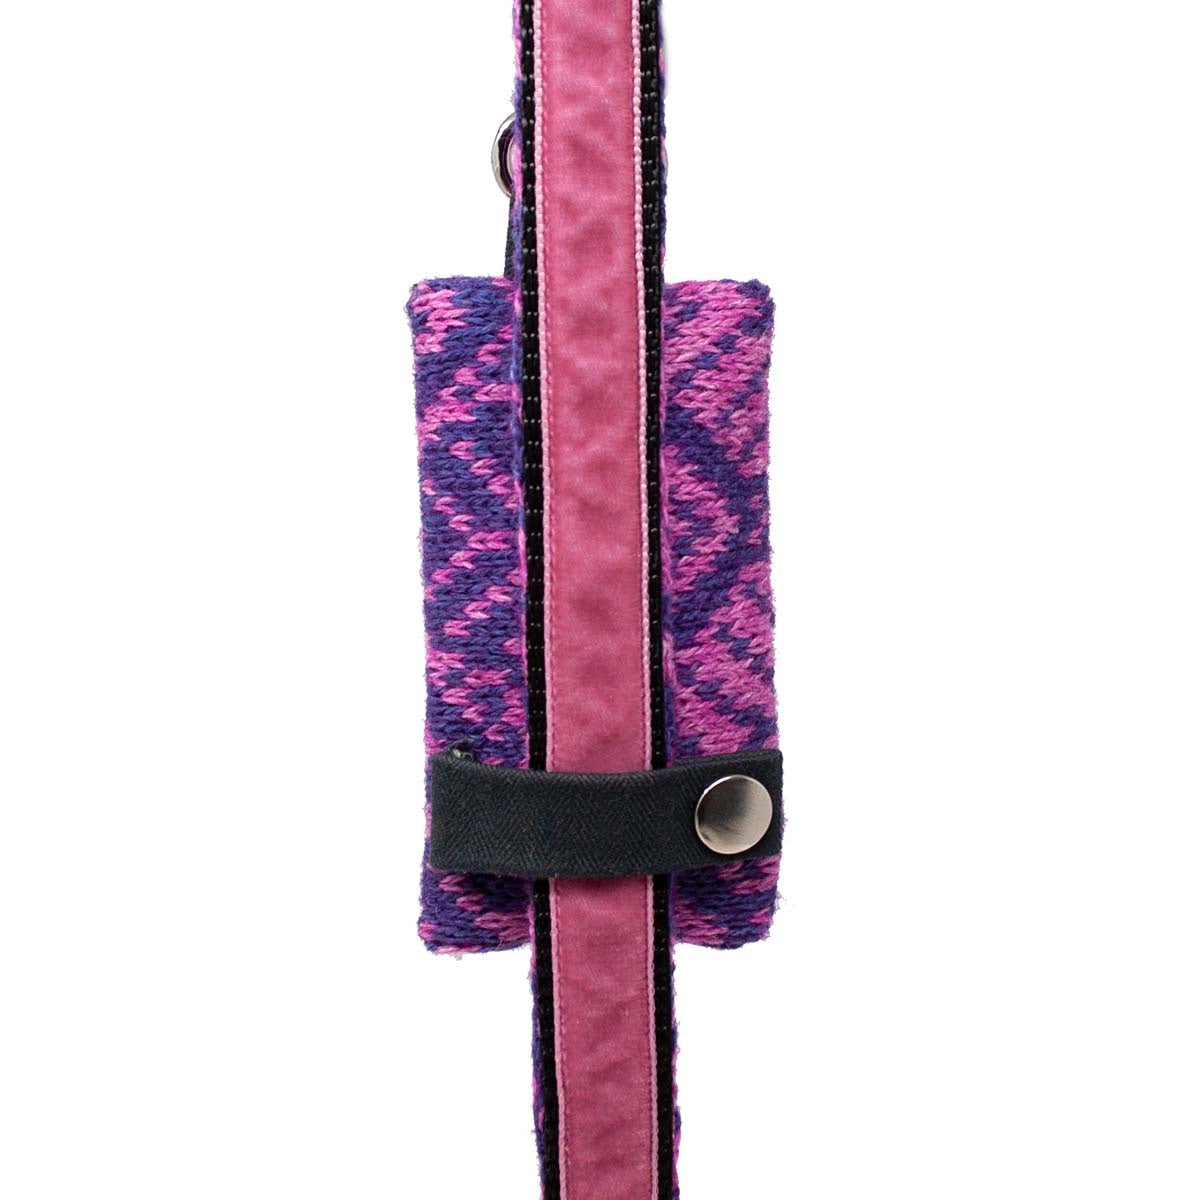 Purple & Pink - Fell Design - Poo Bag Holder